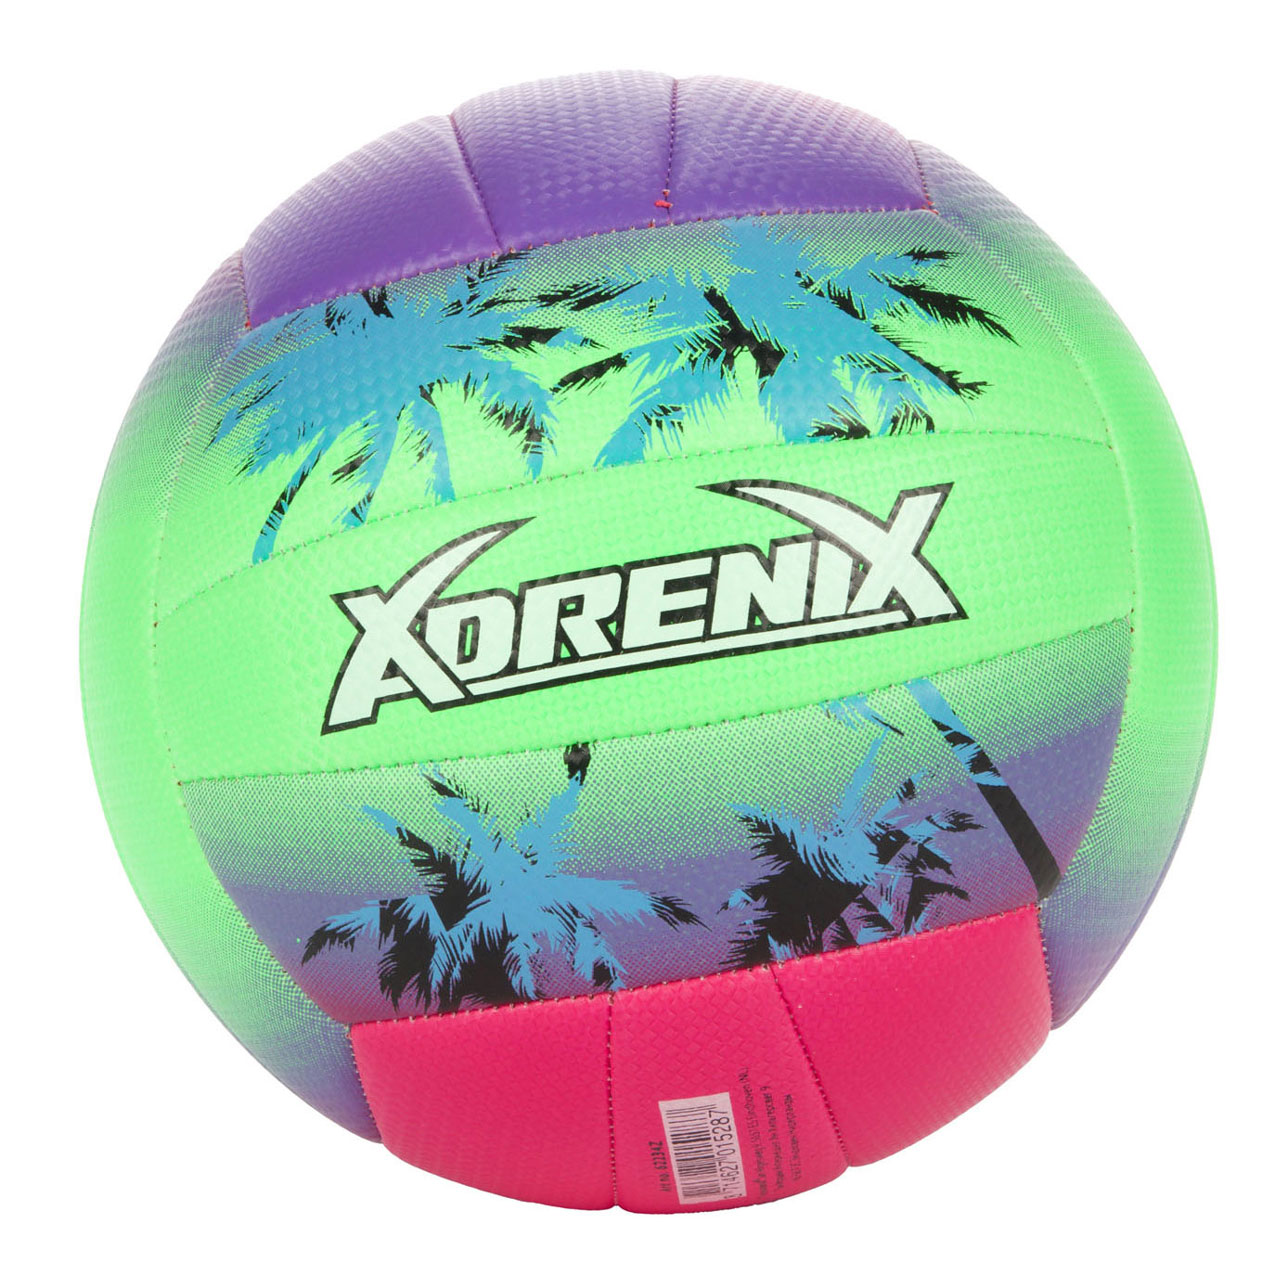 Ballon de beach-volley Adrenix, taille 5